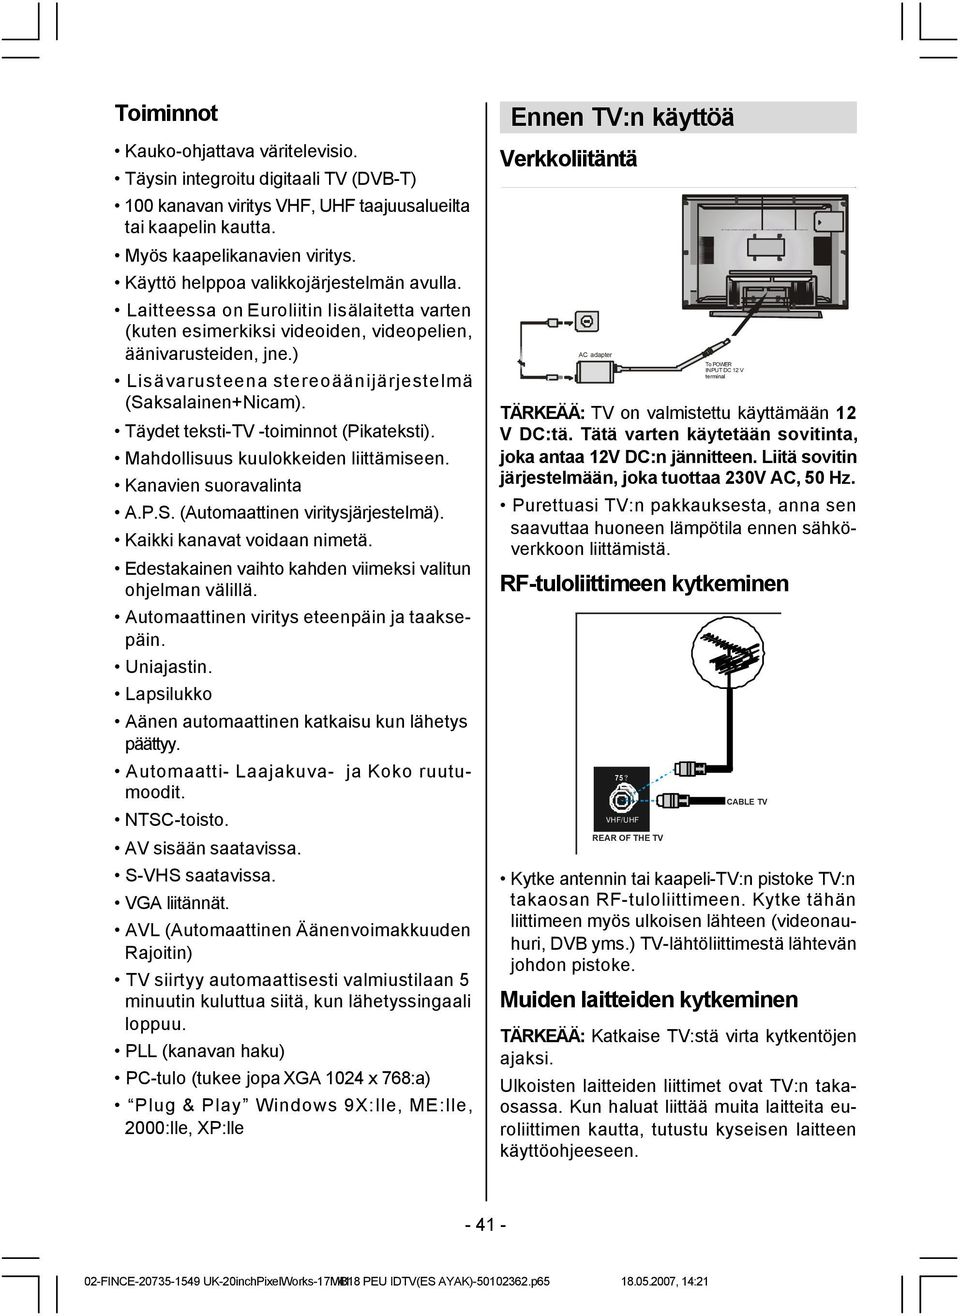 ) Lisävarusteena stereoäänijärjestelmä (Saksalainen+Nicam). Täydet teksti-tv -toiminnot (Pikateksti). Mahdollisuus kuulokkeiden liittämiseen. Kanavien suoravalinta A.P.S. (Automaattinen viritysjärjestelmä).